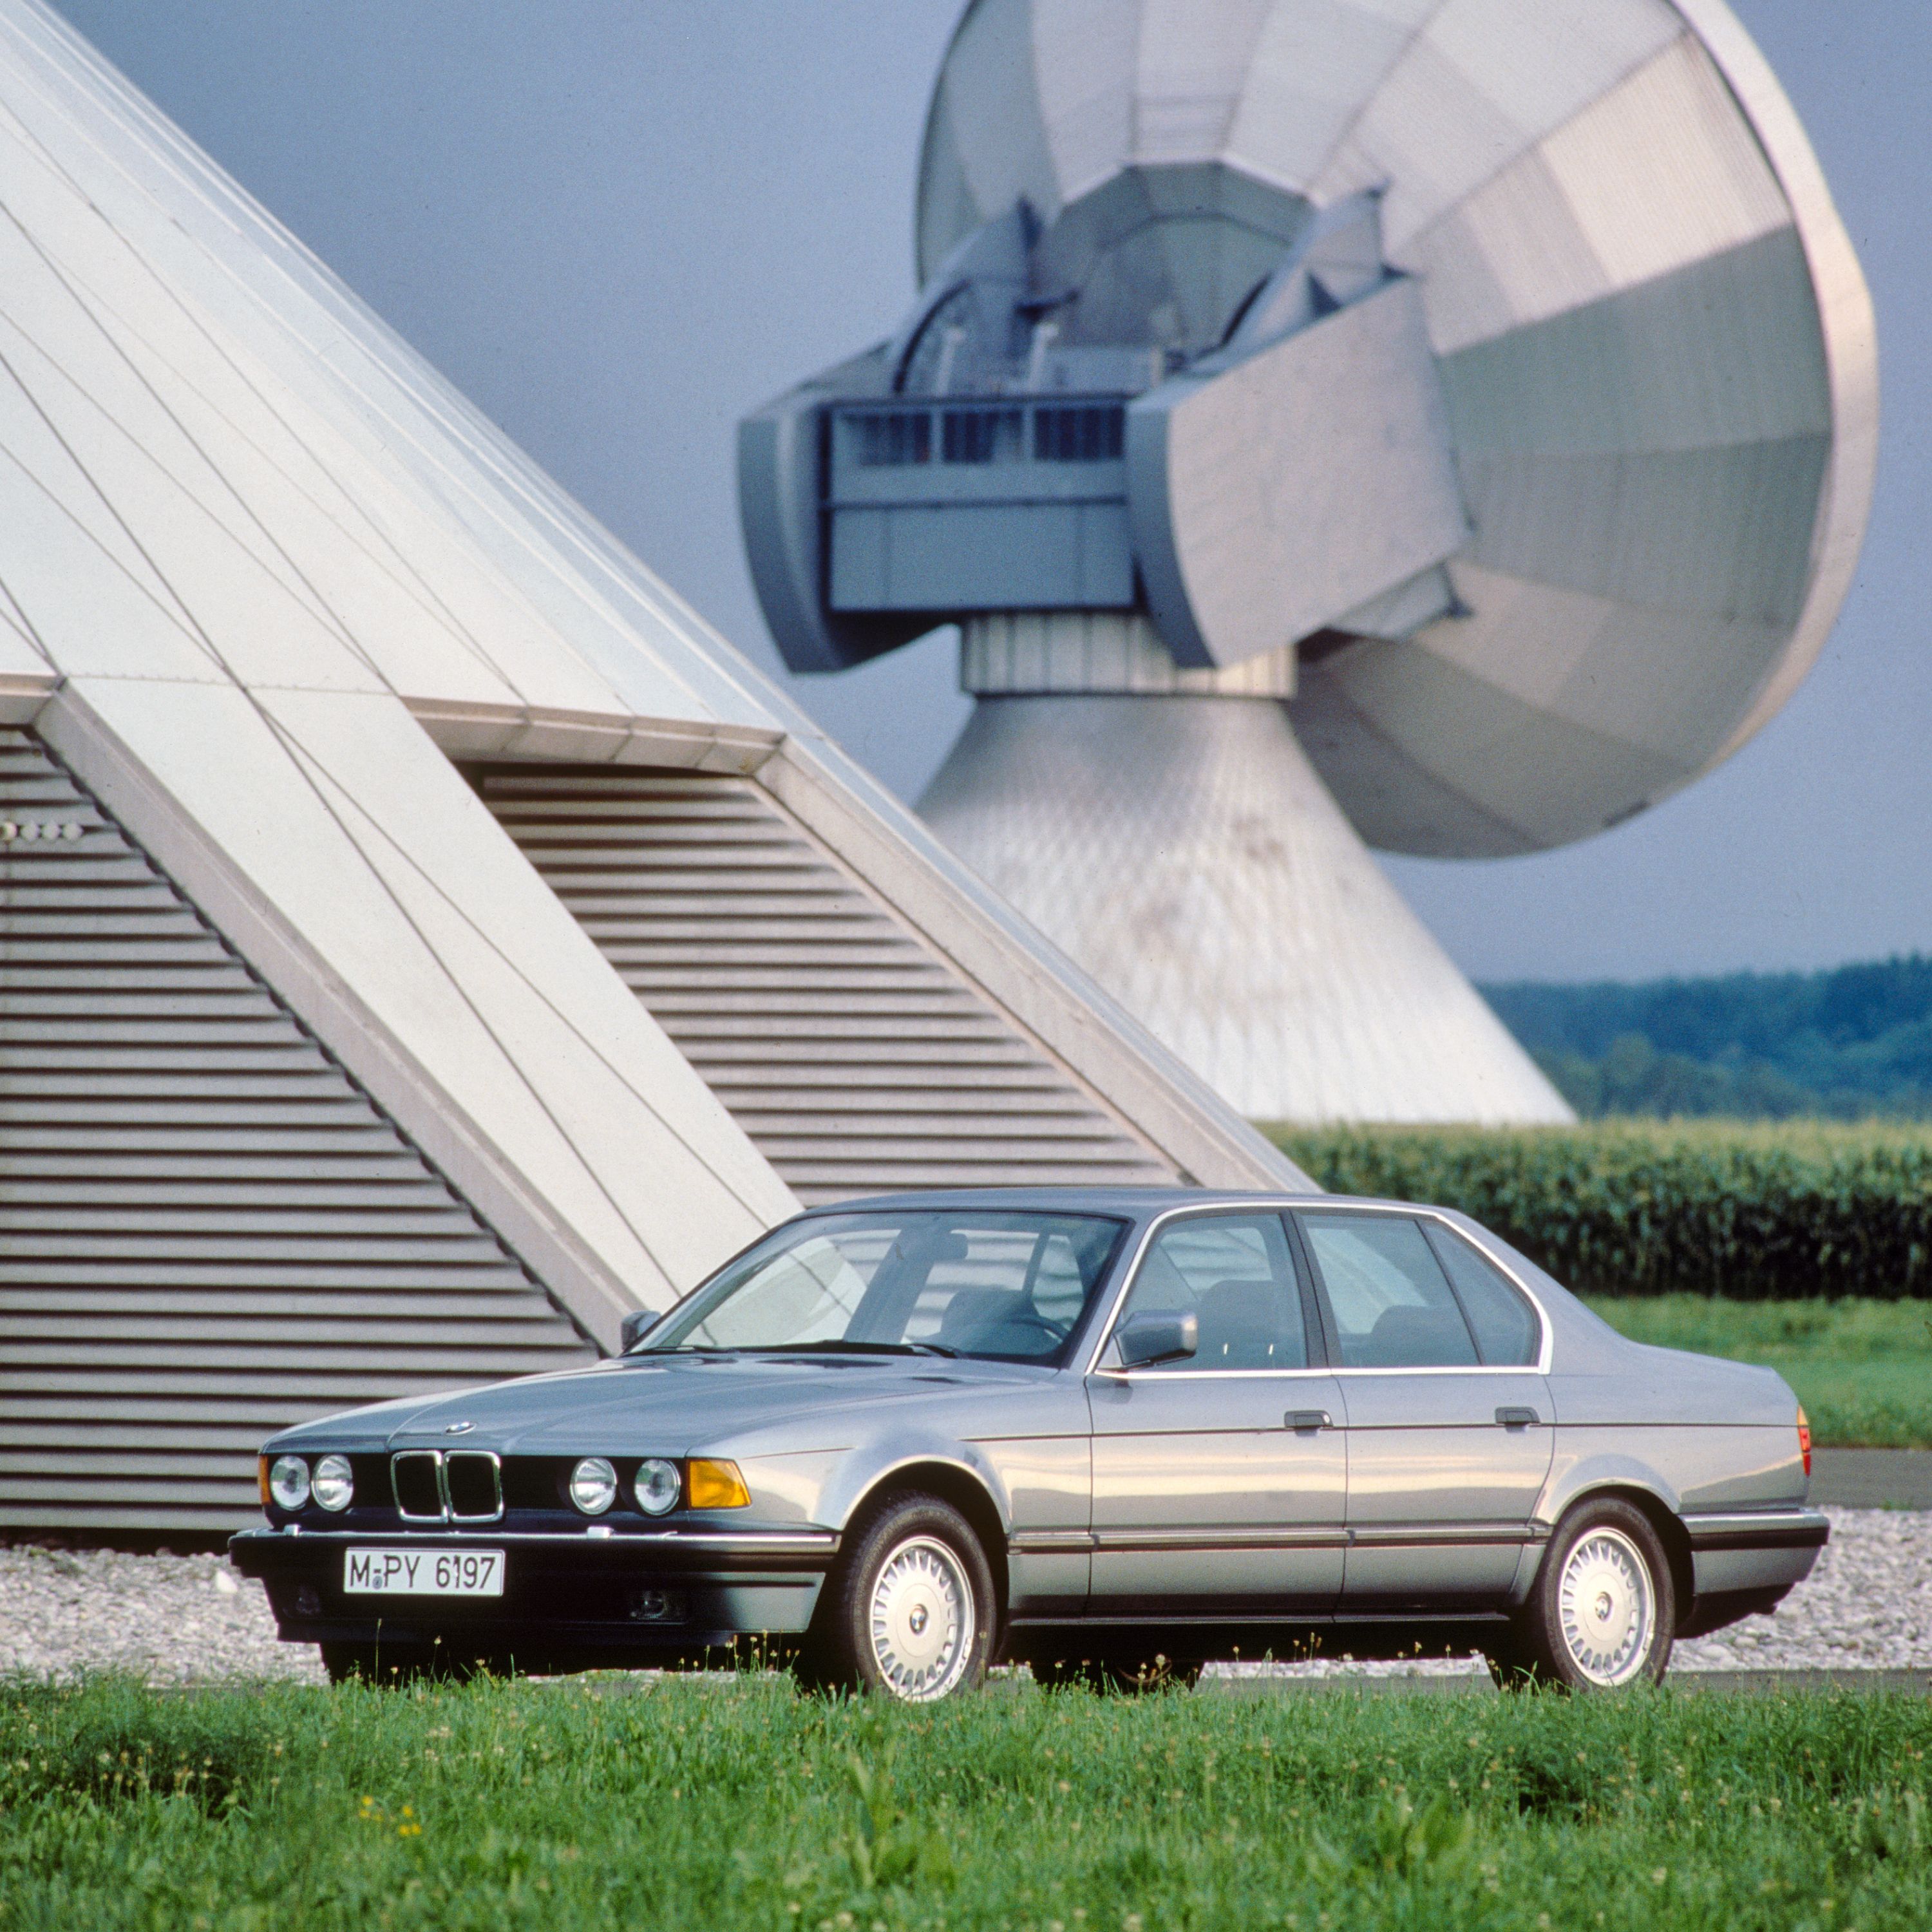 BMW Serie 7 Berlina E32 in un ambiente agricolo circondato da campi e terreni agricoli